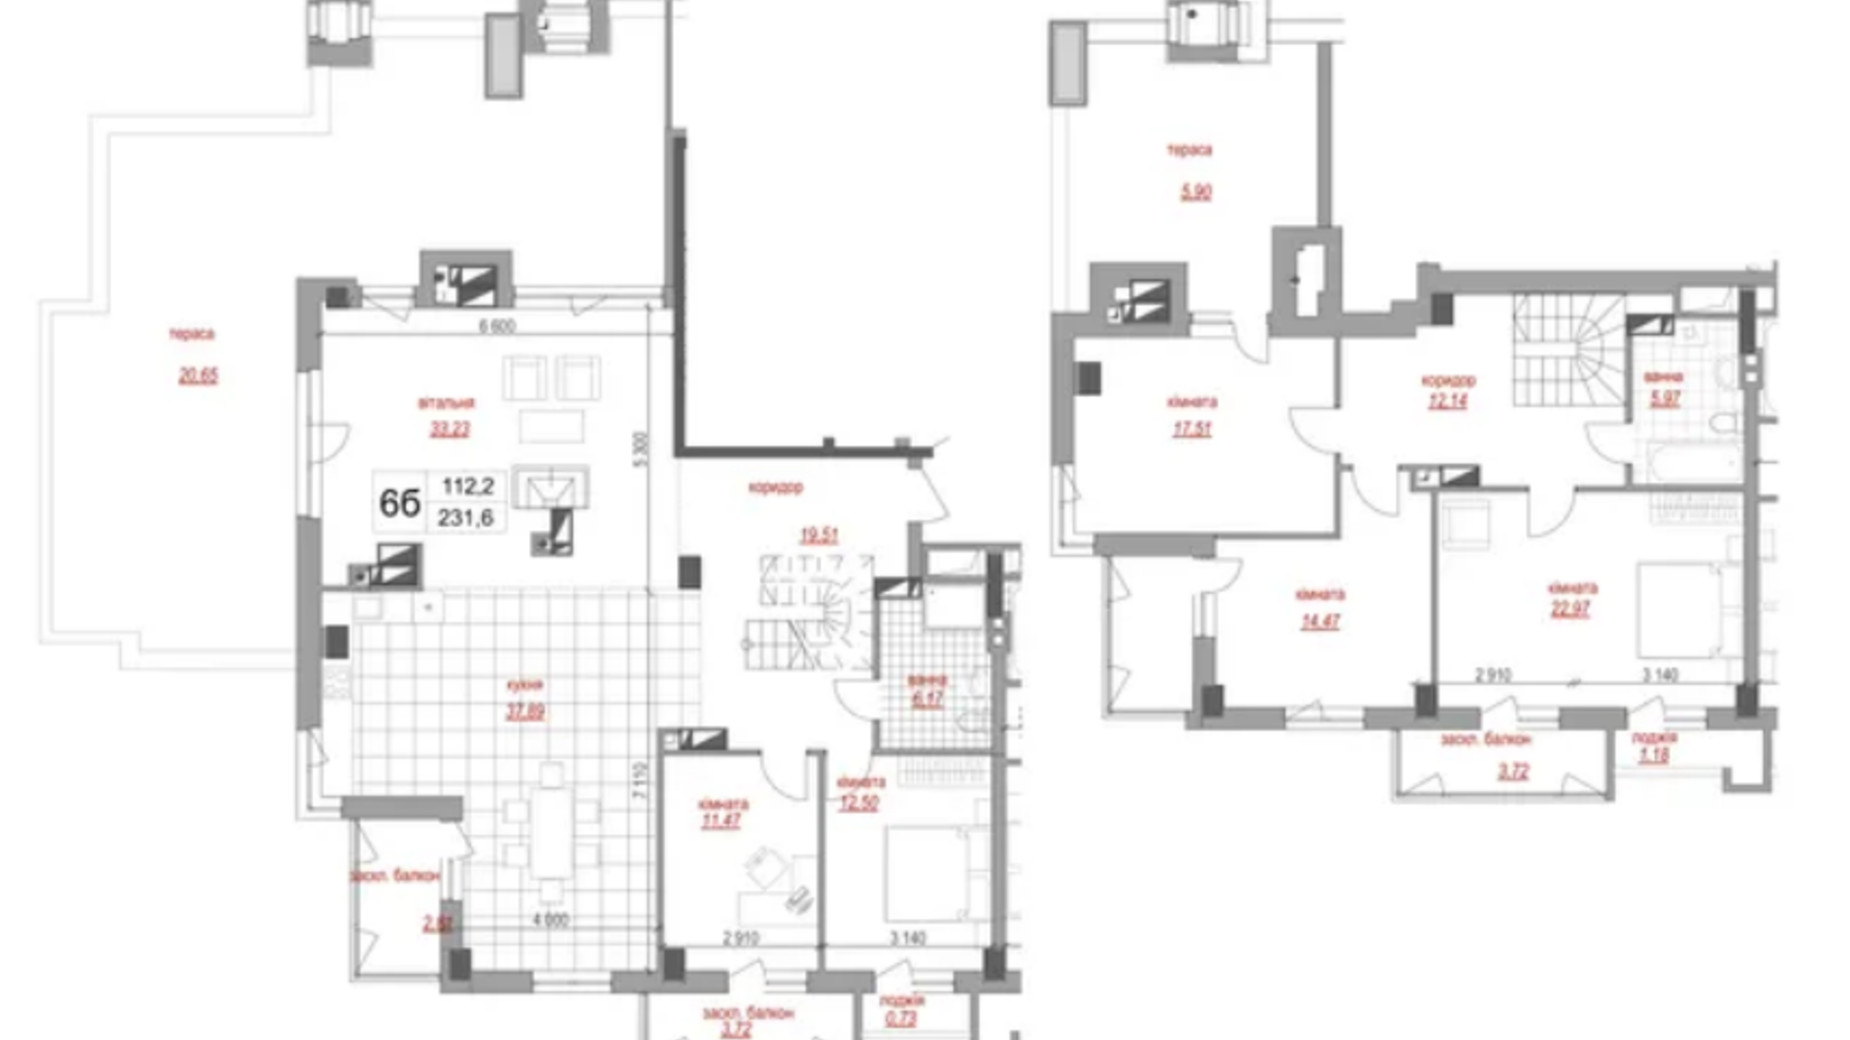 Планировка много­уровневой квартиры в ЖК West House 231.6 м², фото 695709